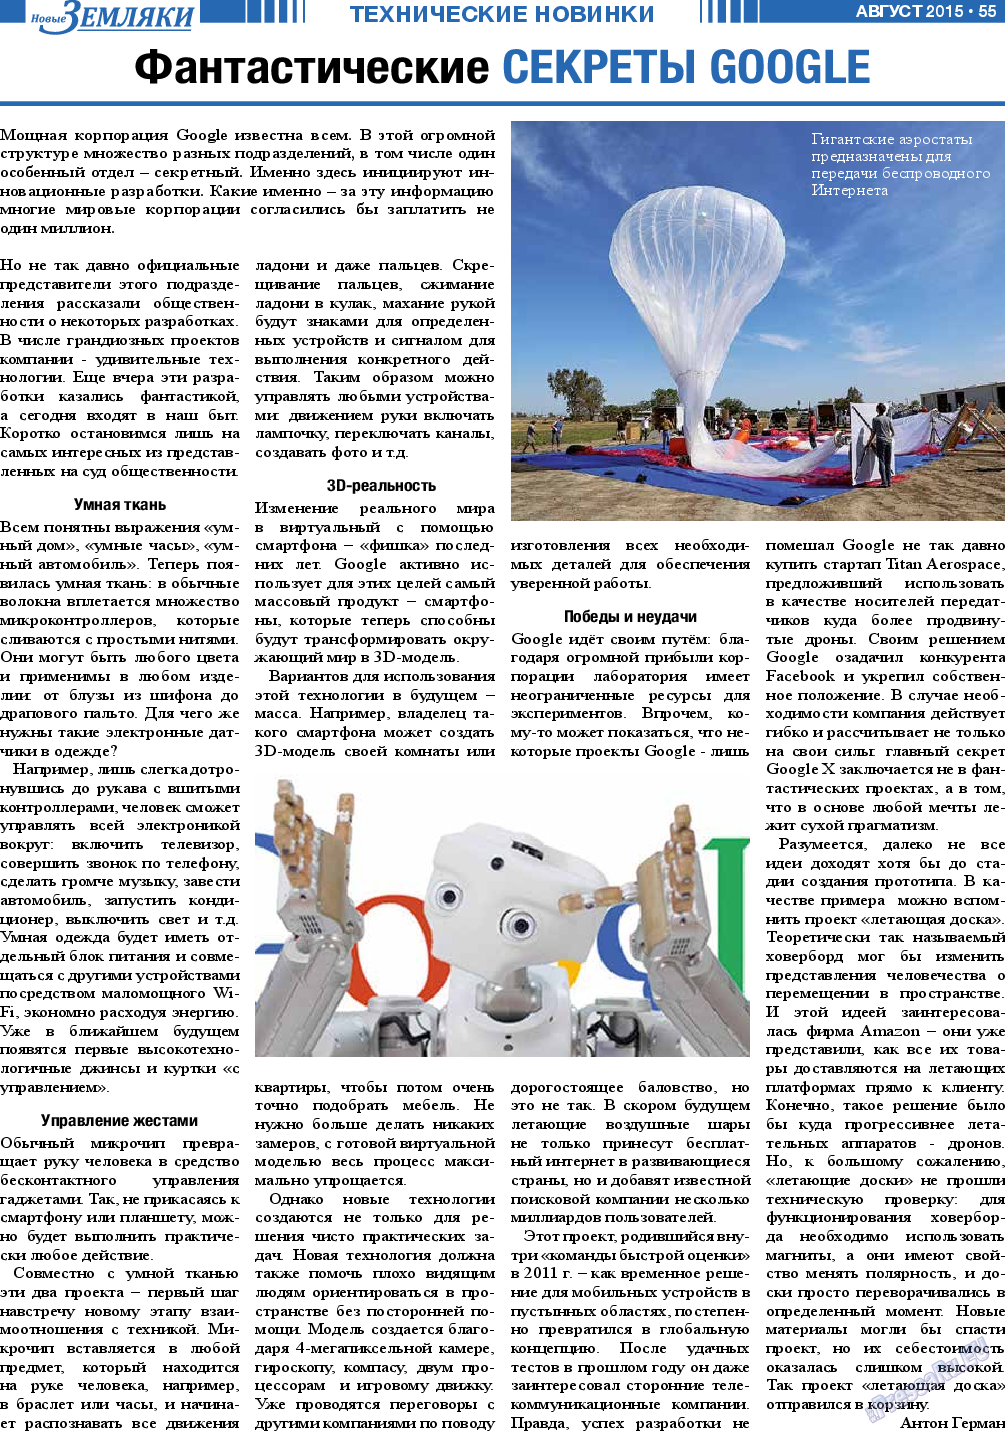 Новые Земляки, газета. 2015 №8 стр.55